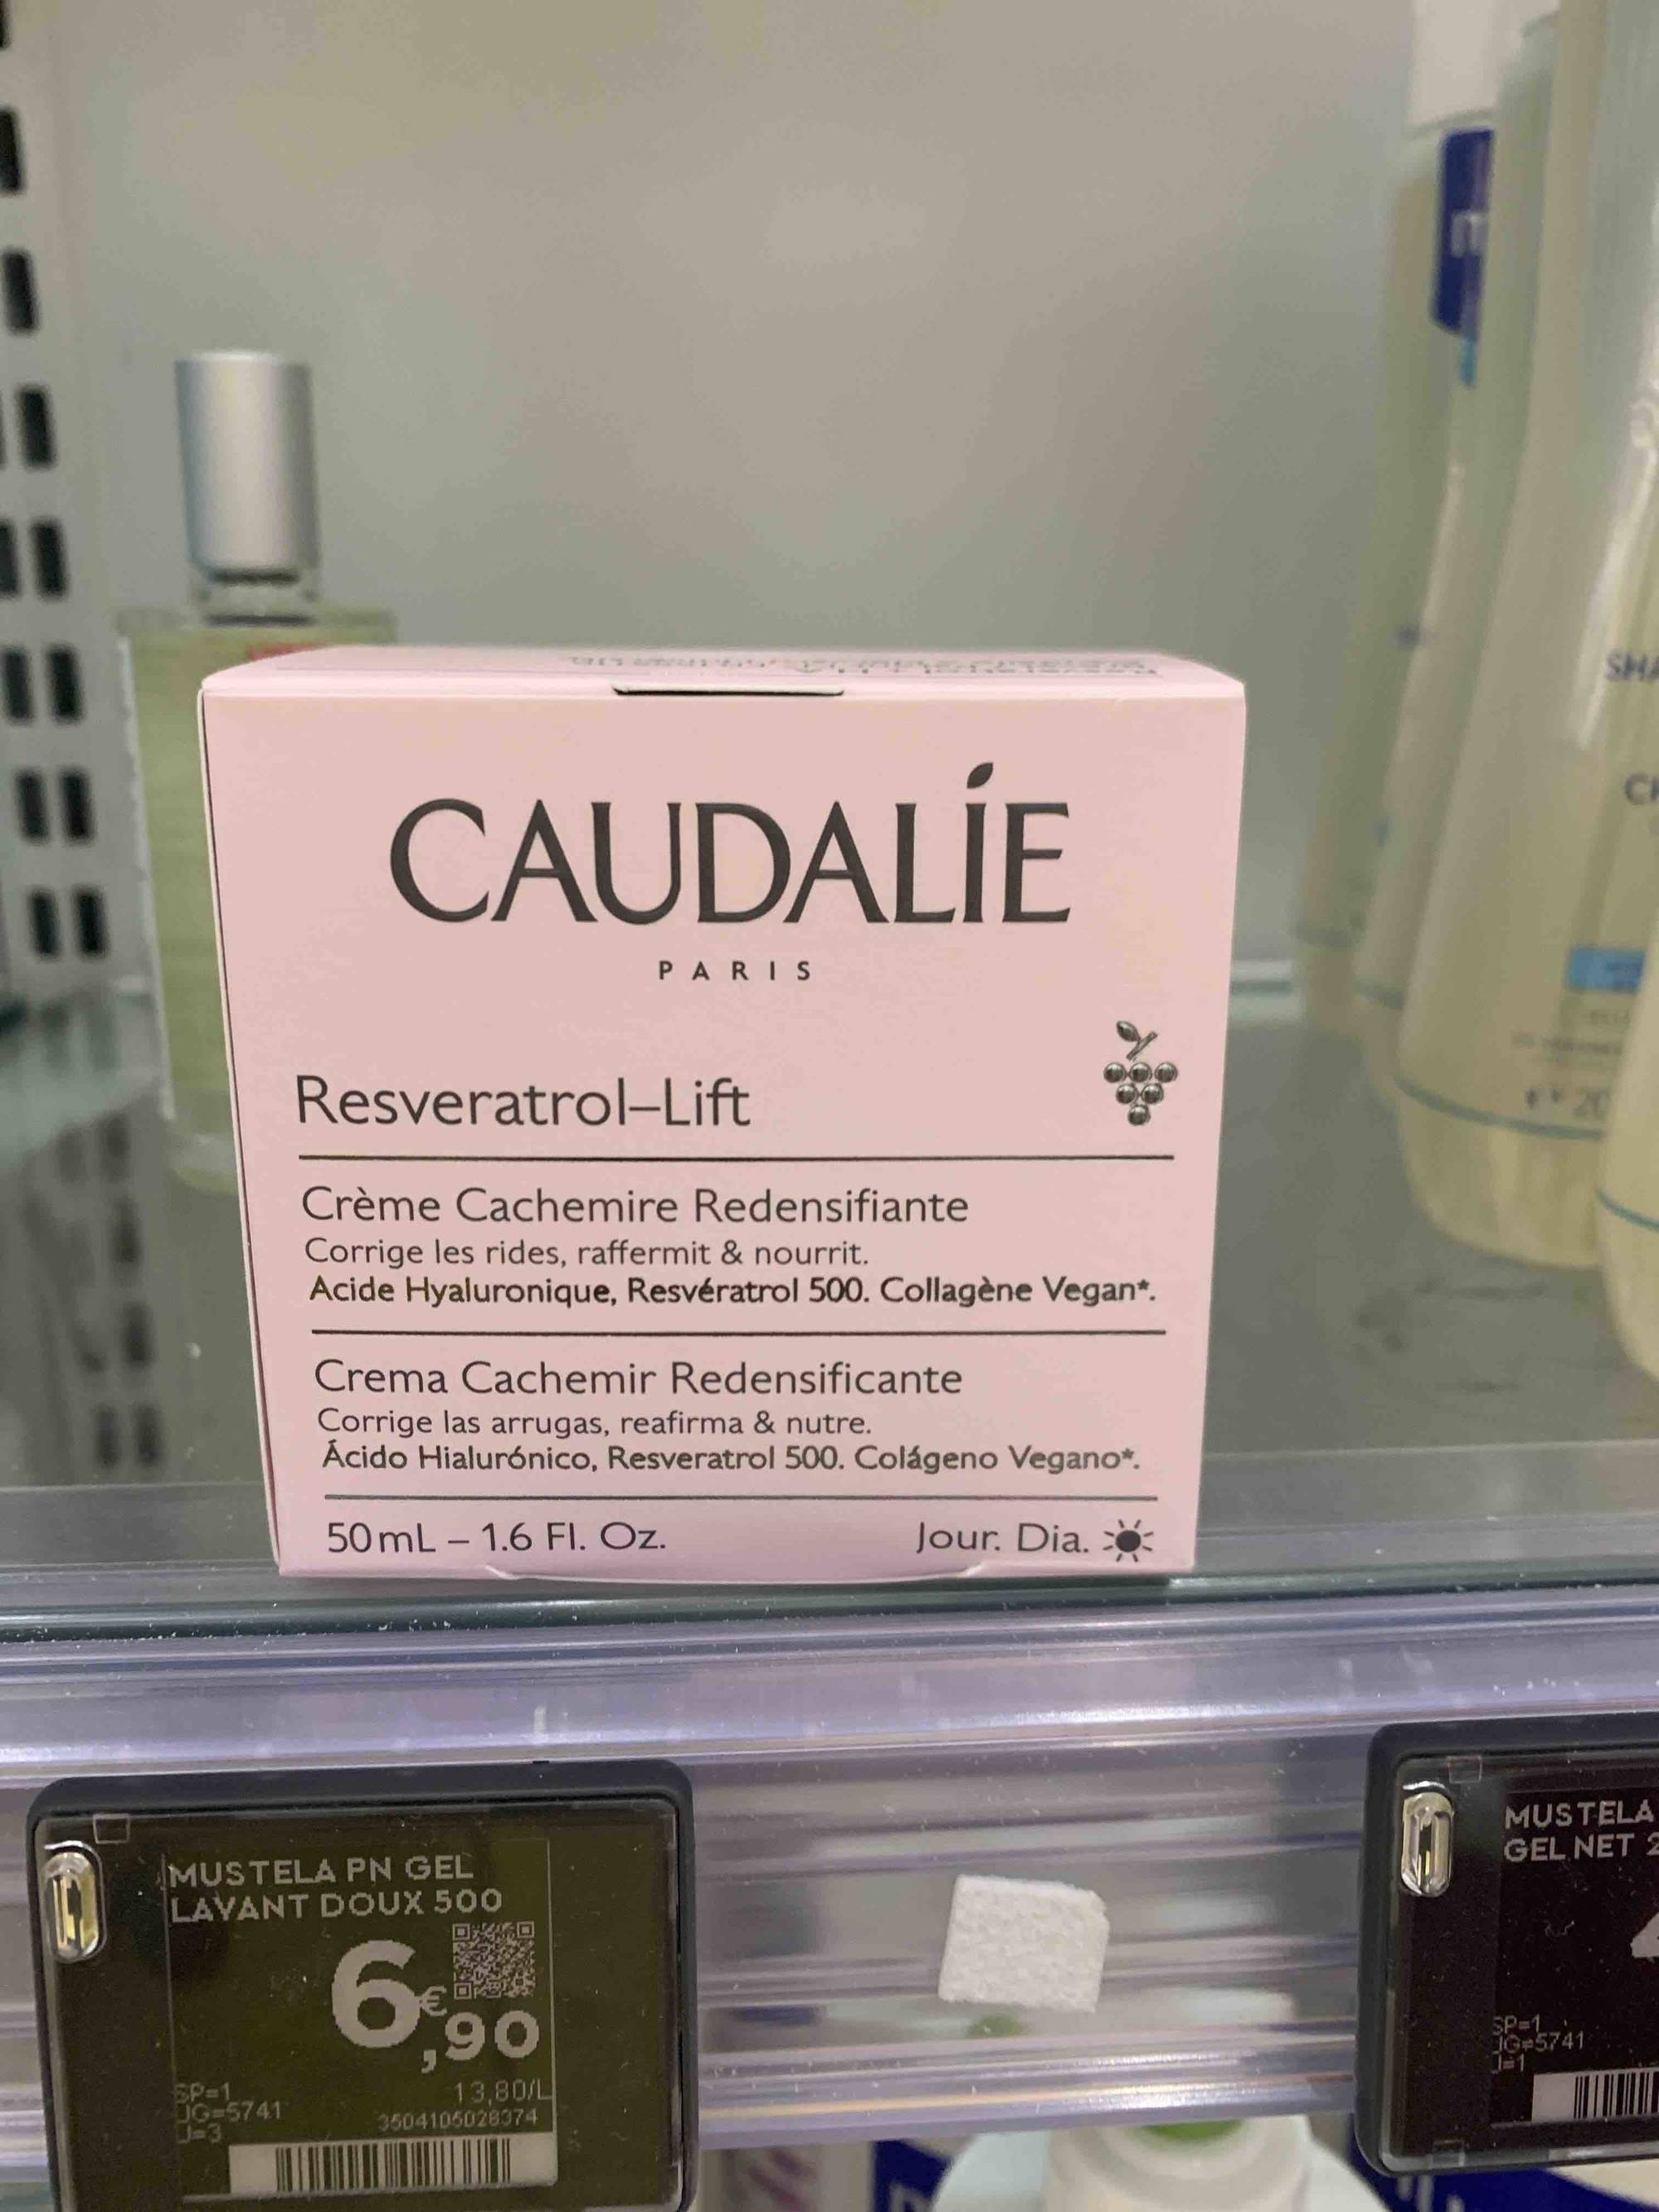 CAUDALIE - Resveratrol-lift - Crème cachemire redensifiante